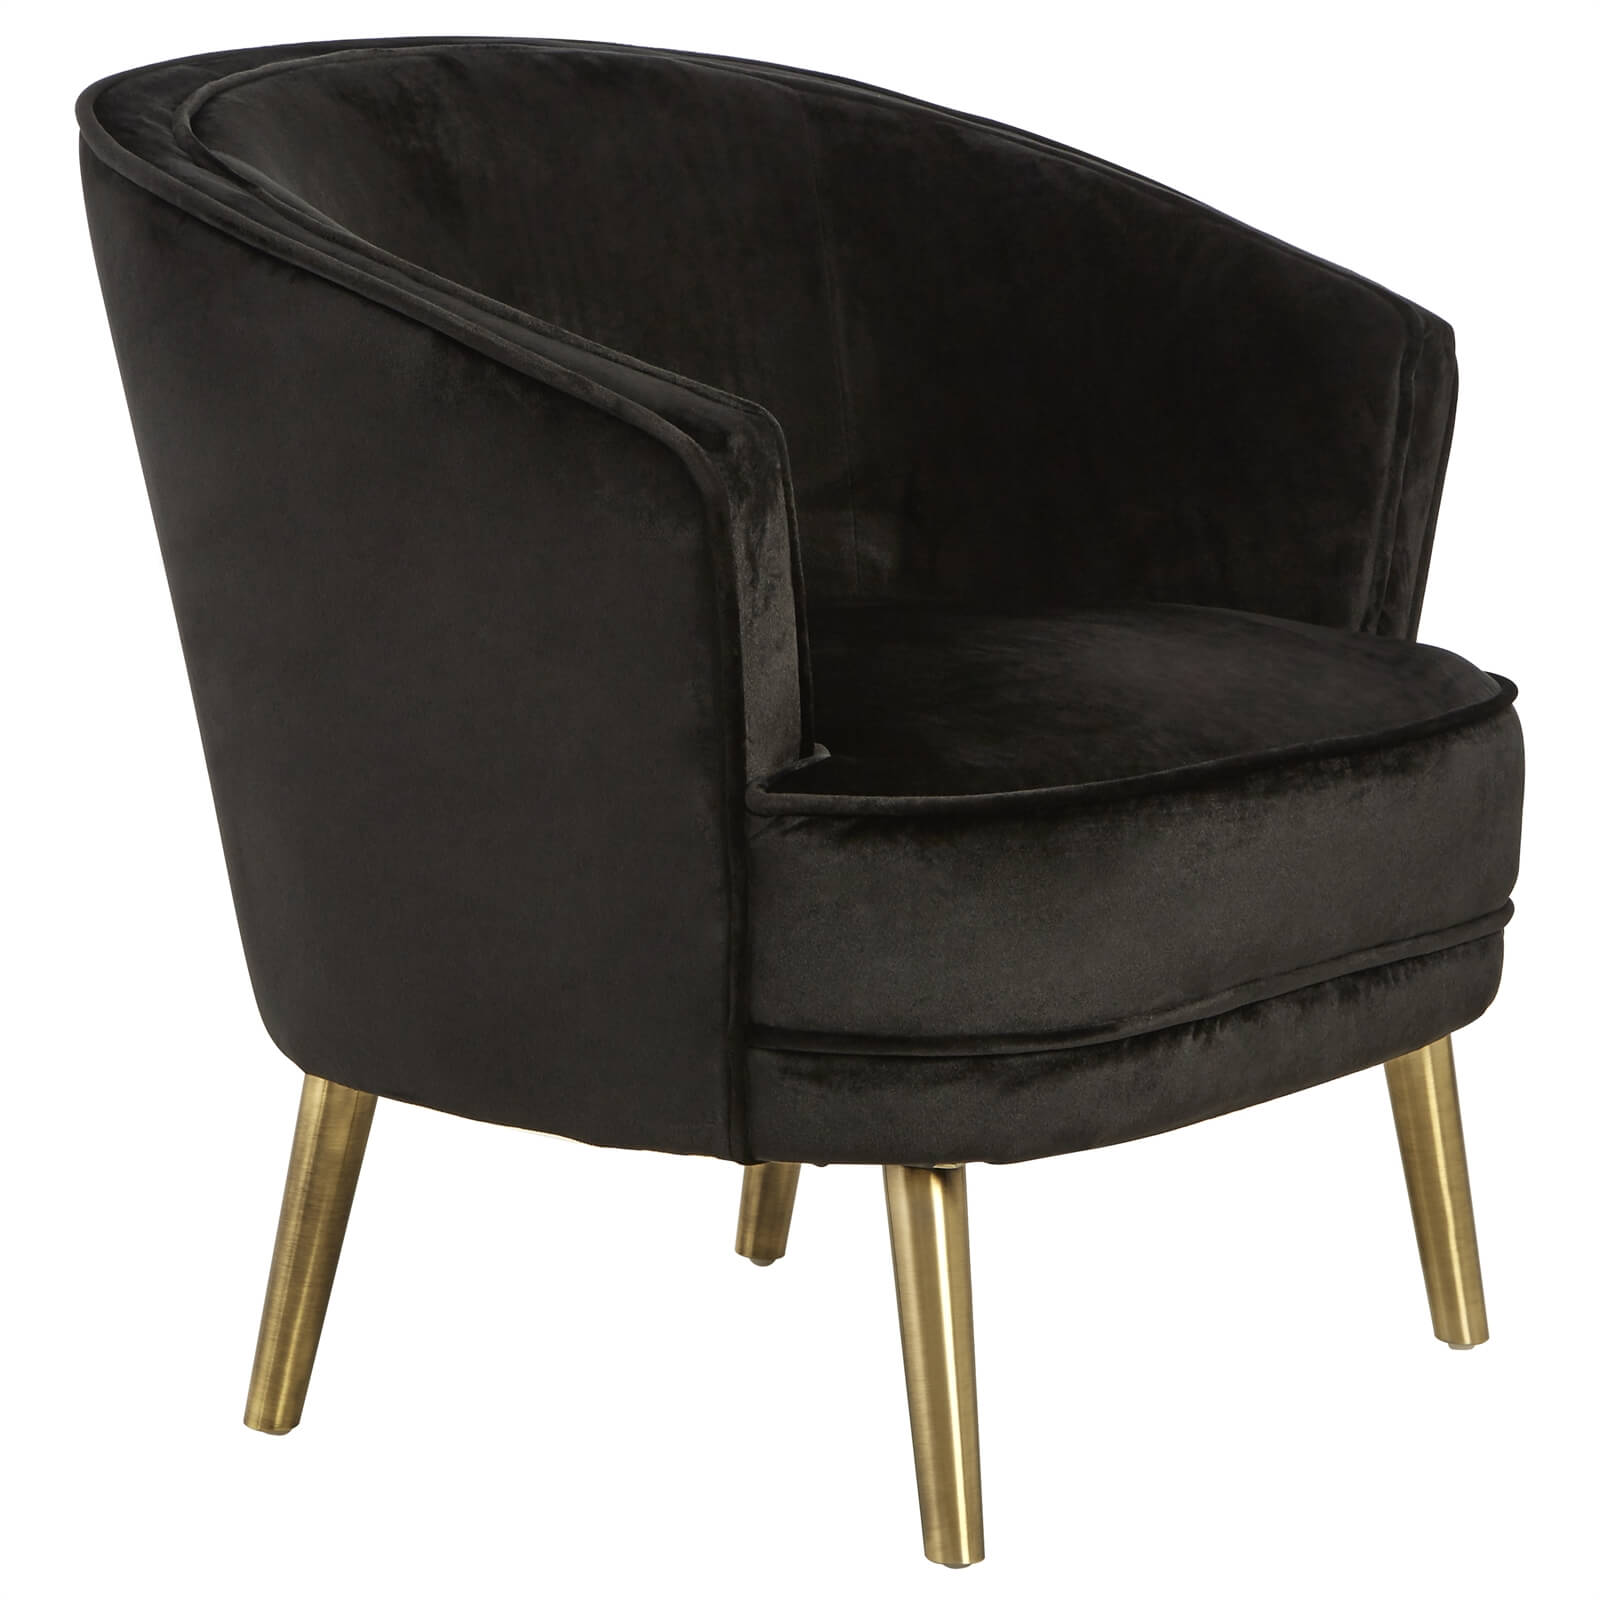 Louxor Velvet Round Chair - Black